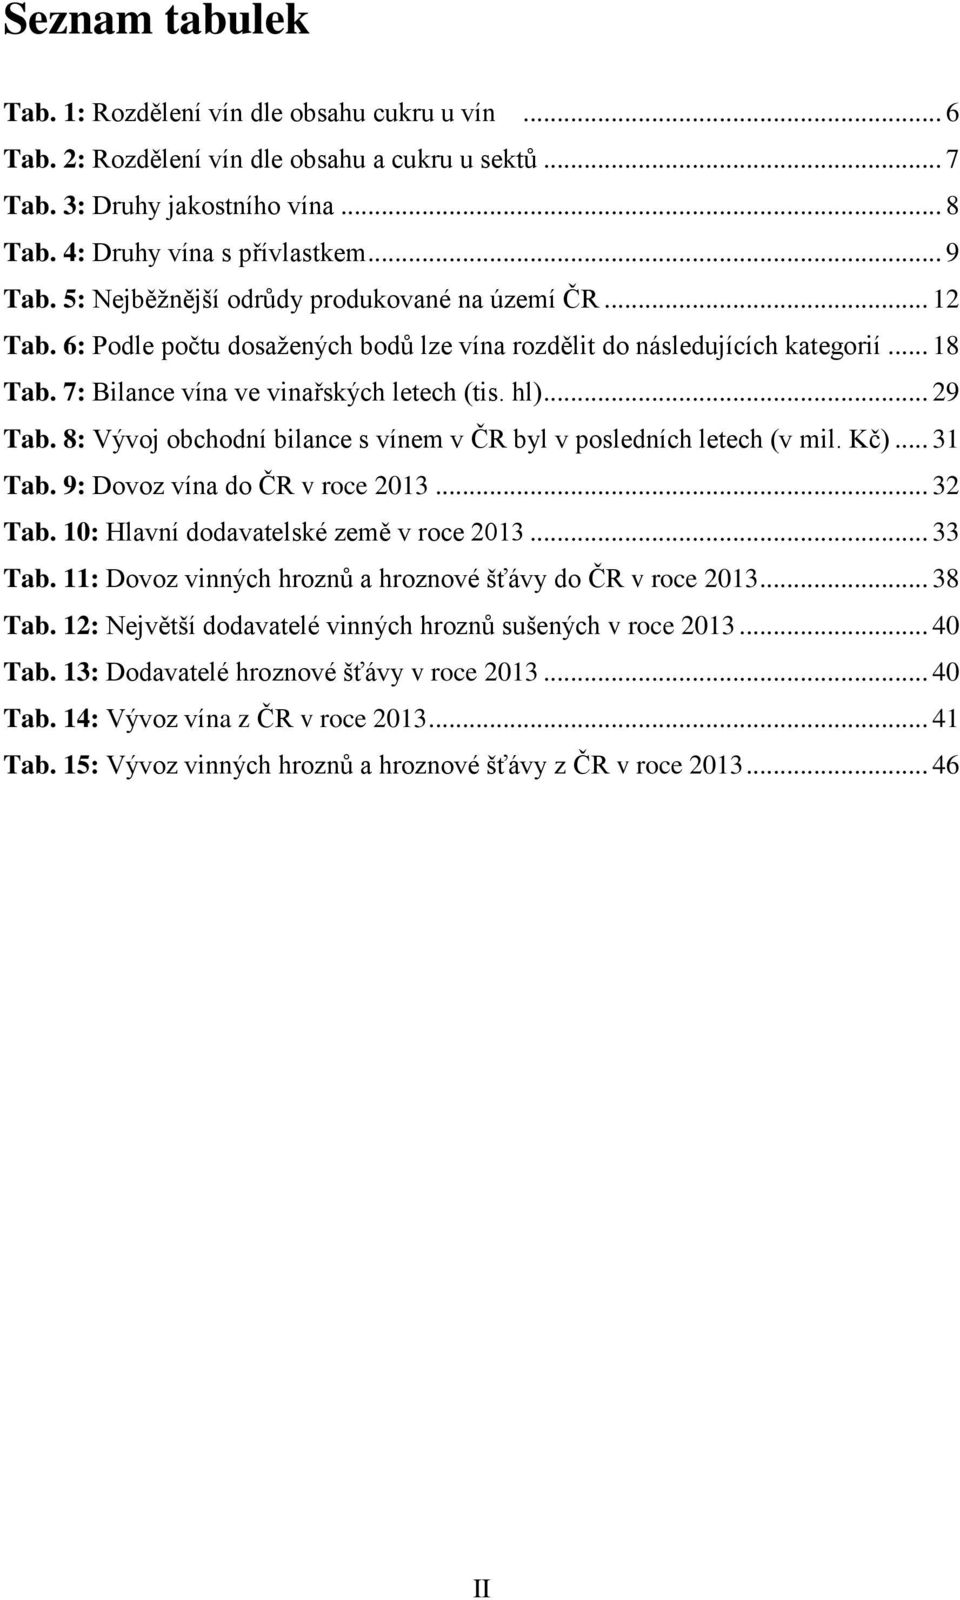 8: Vývoj obchodní bilance s vínem v ČR byl v posledních letech (v mil. Kč)... 31 Tab. 9: Dovoz vína do ČR v roce 2013... 32 Tab. 10: Hlavní dodavatelské země v roce 2013... 33 Tab.